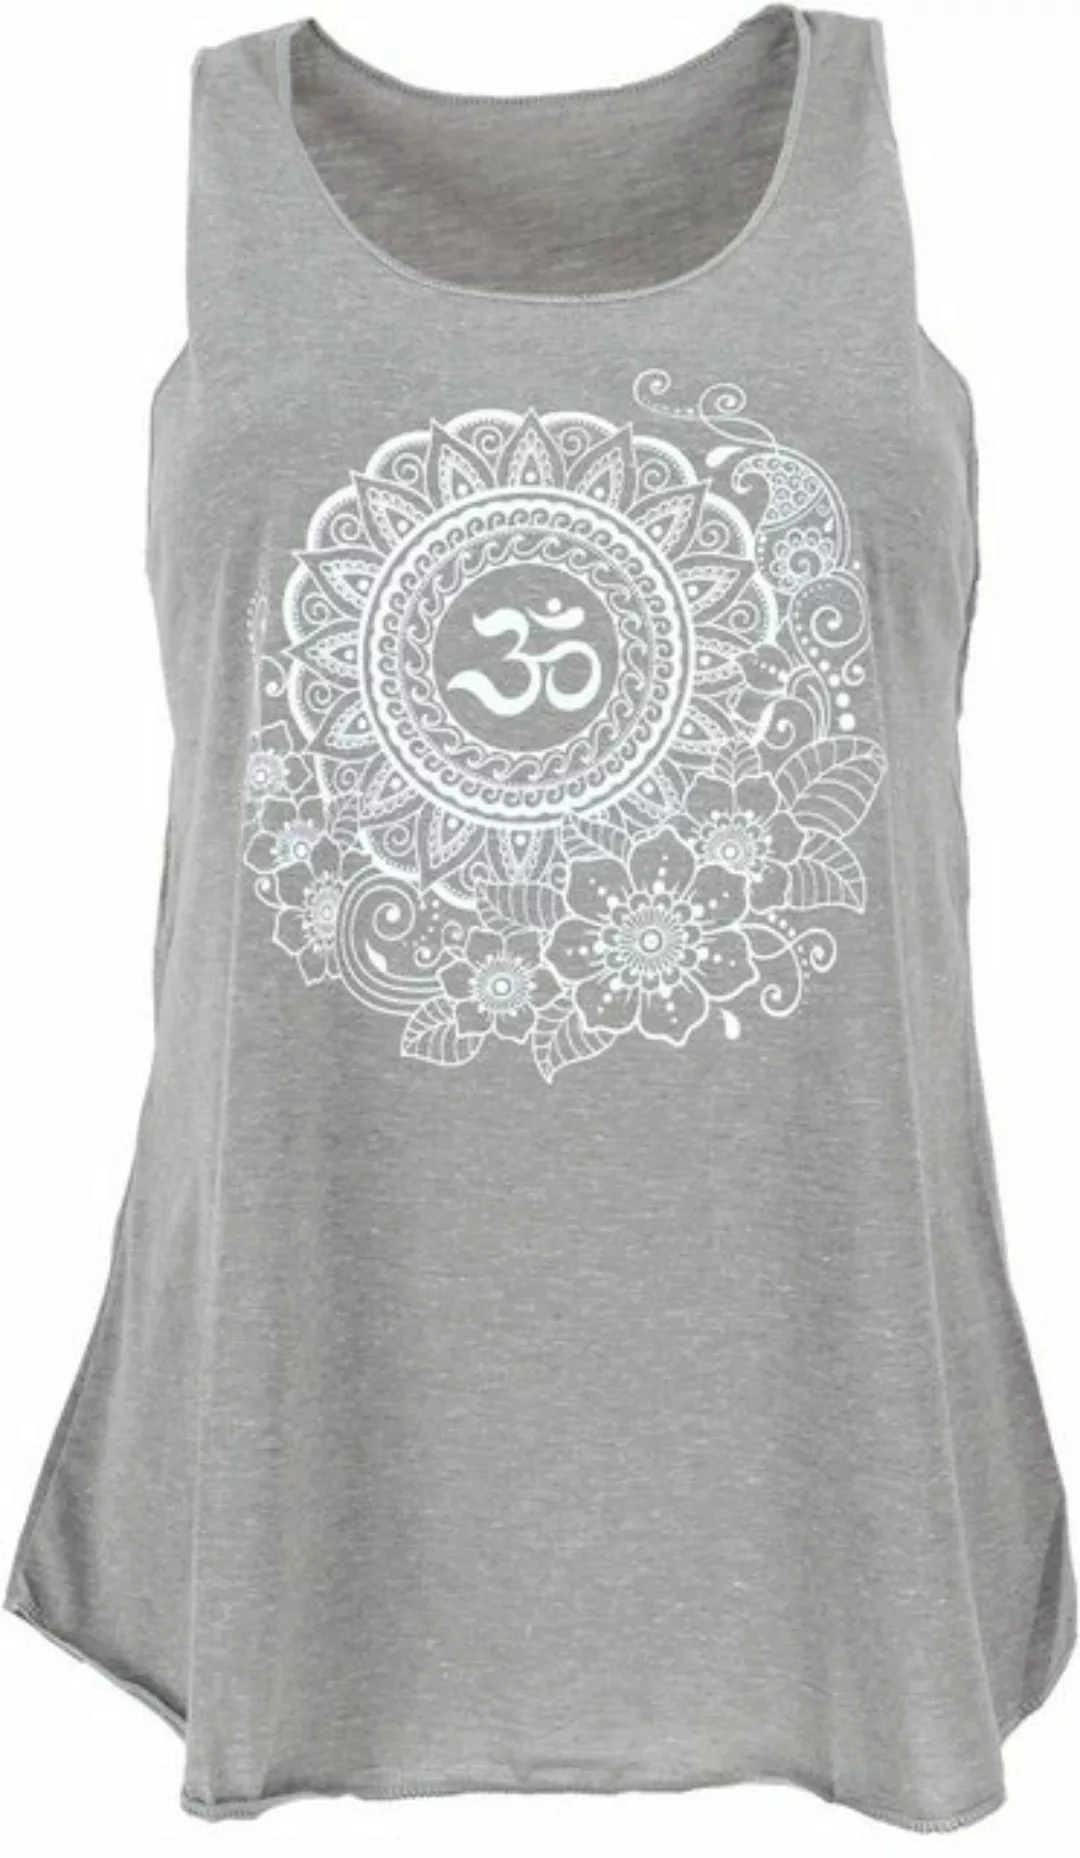 Guru-Shop T-Shirt Tanktop mit Ethnodruck, Tree of life Yogatop -.. Festival günstig online kaufen